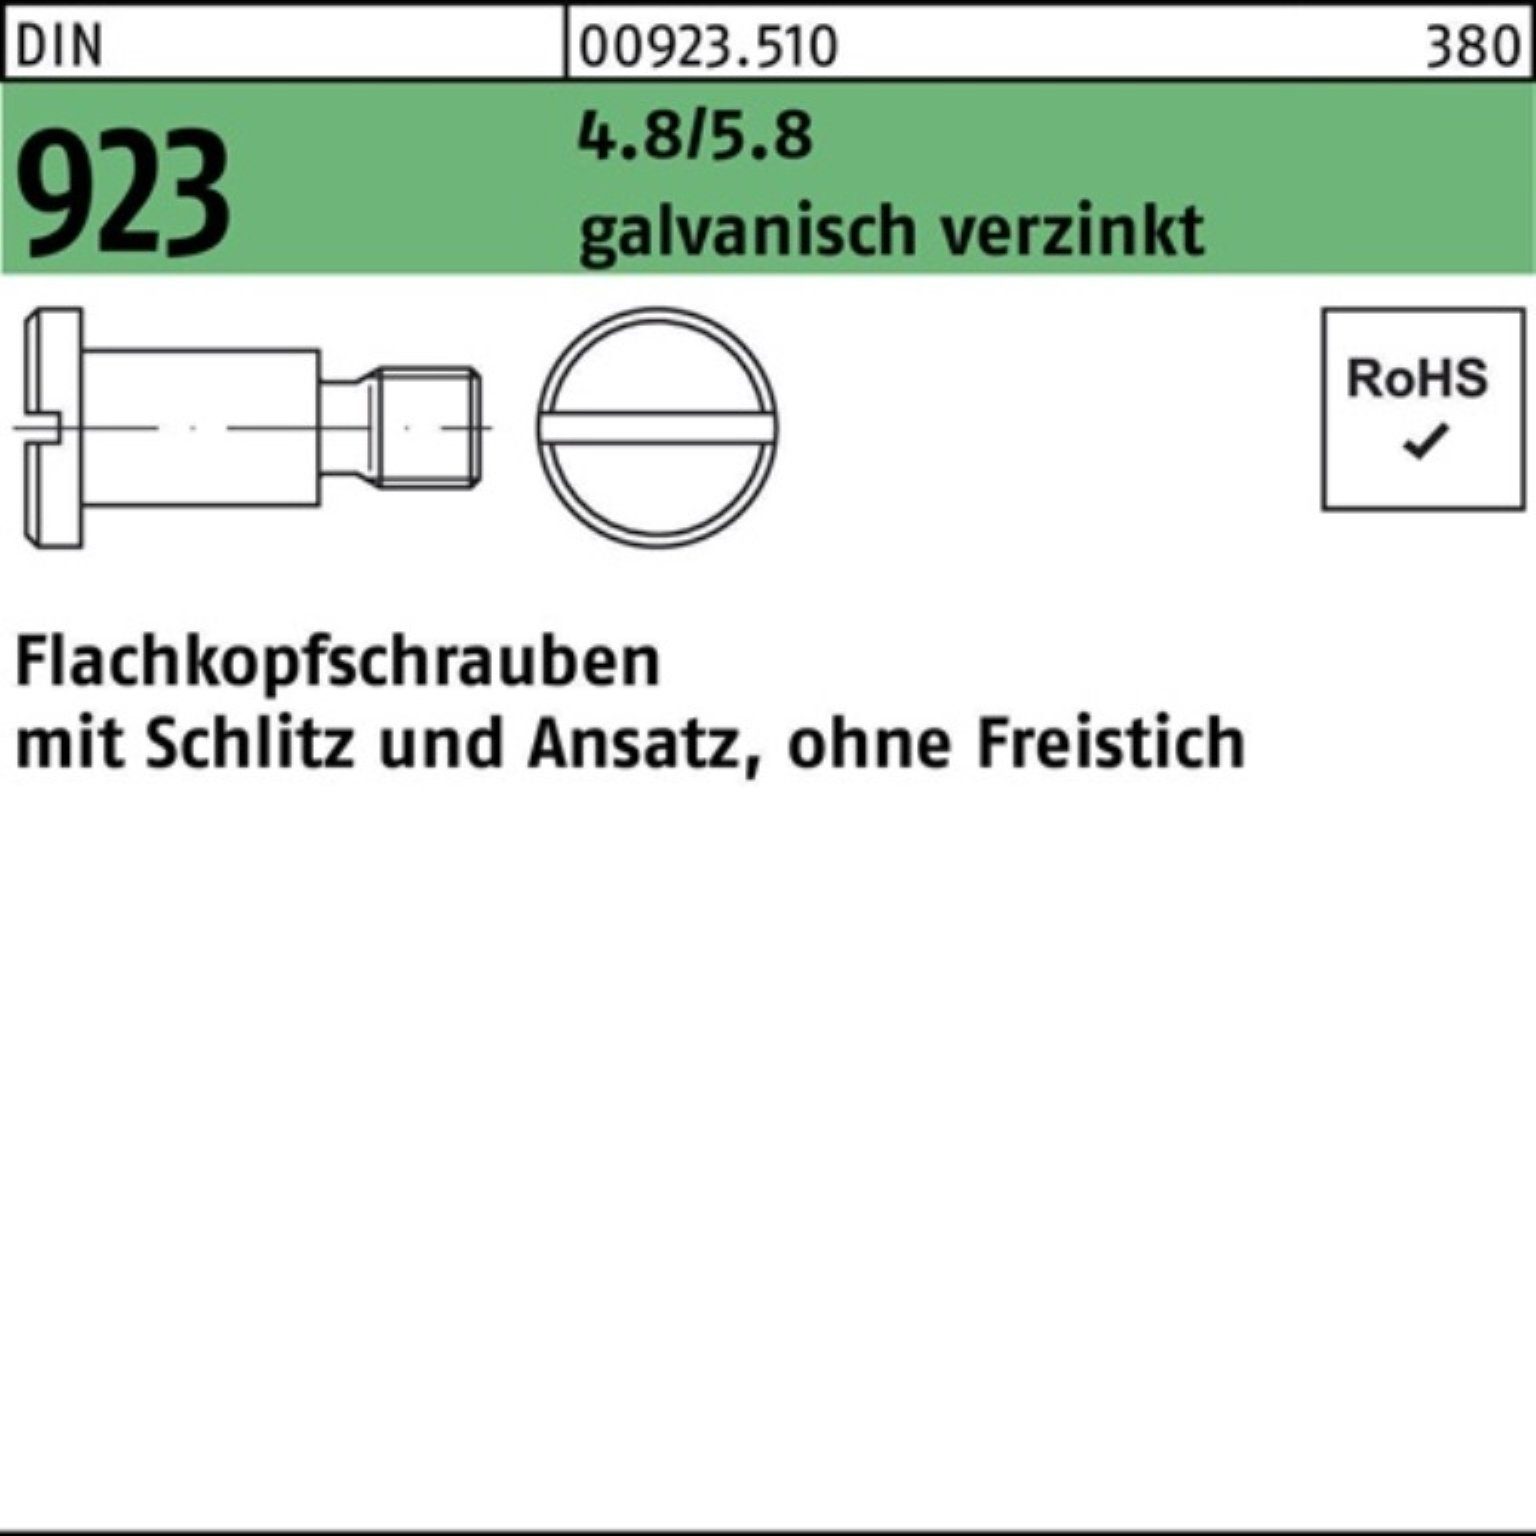 Reyher DIN 4.8/5.8 100er Flachkopfschraube 923 Schraube M8x25x11,0 Pack Schlitz/Ansatz